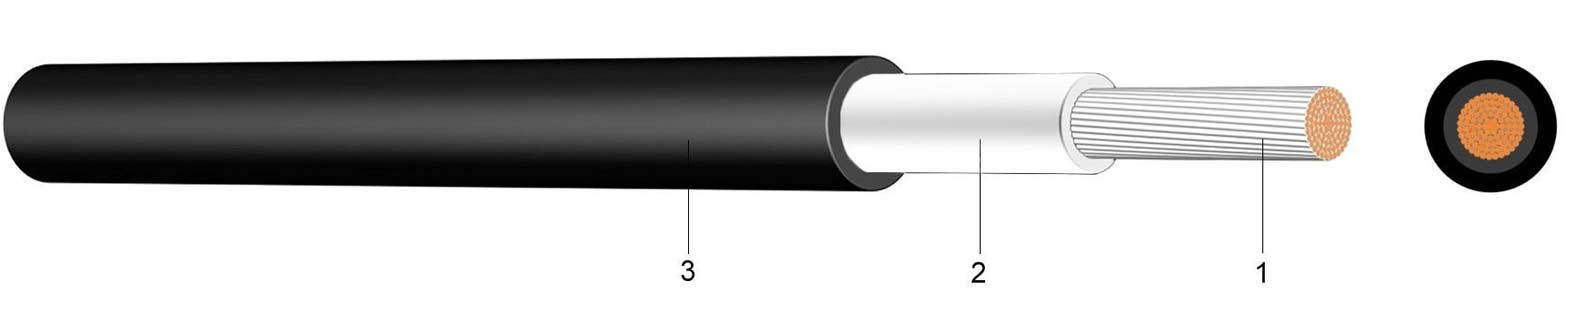 Solarkabel 1-polig 6mm 100m Rolle schwarz 